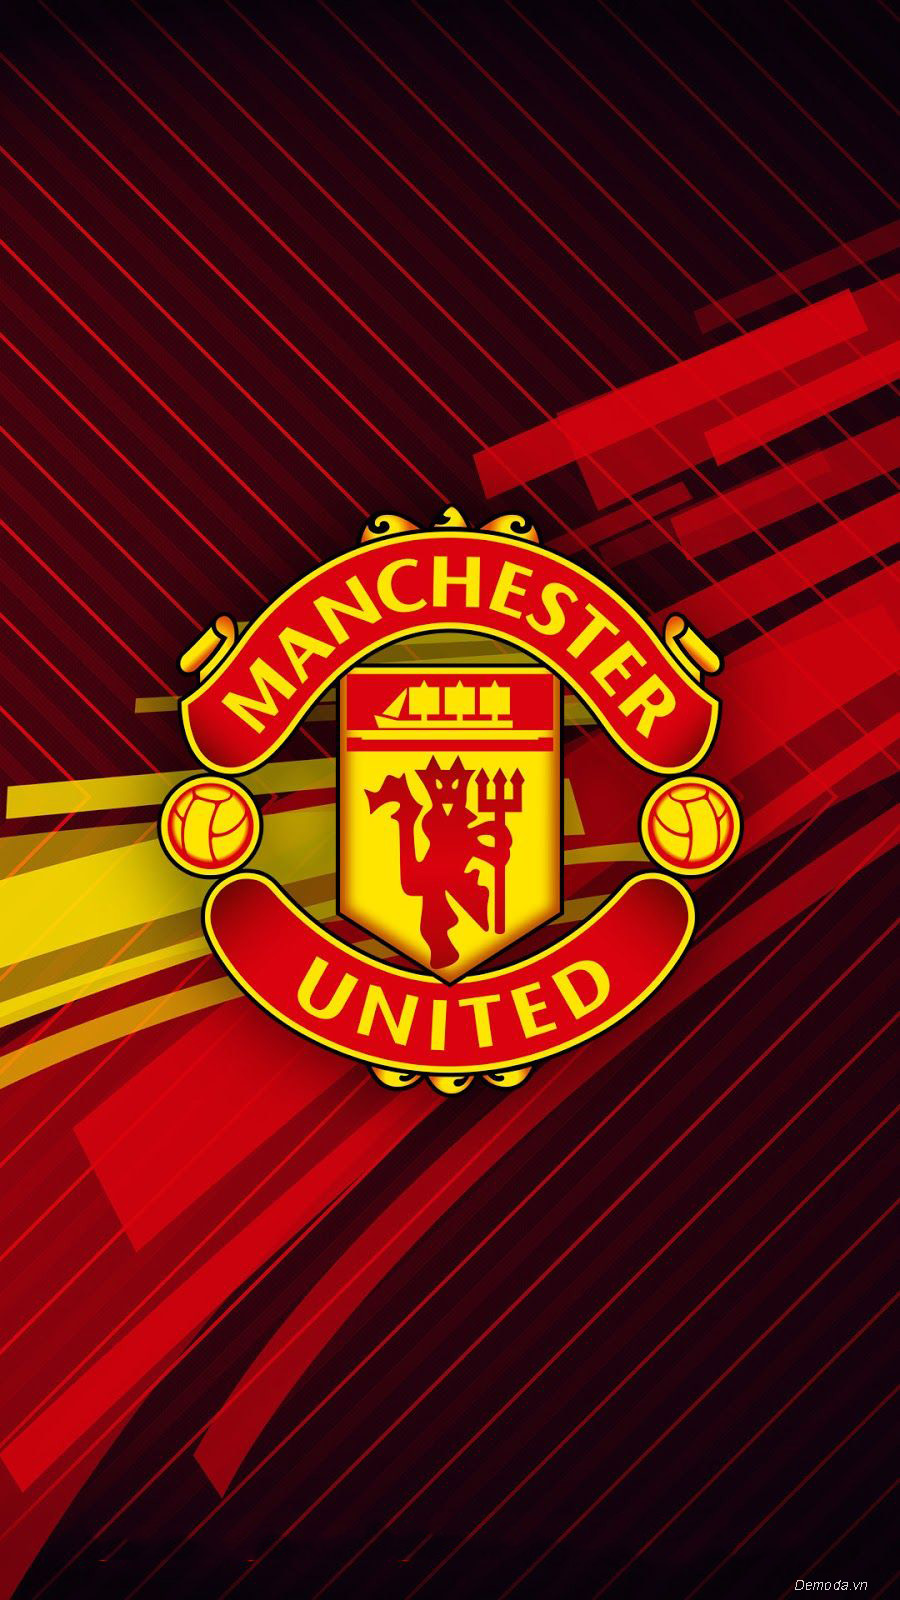 Manchester United thẳng tiến vào chung kết Cúp Liên đoàn Anh  Bóng đá   Vietnam VietnamPlus